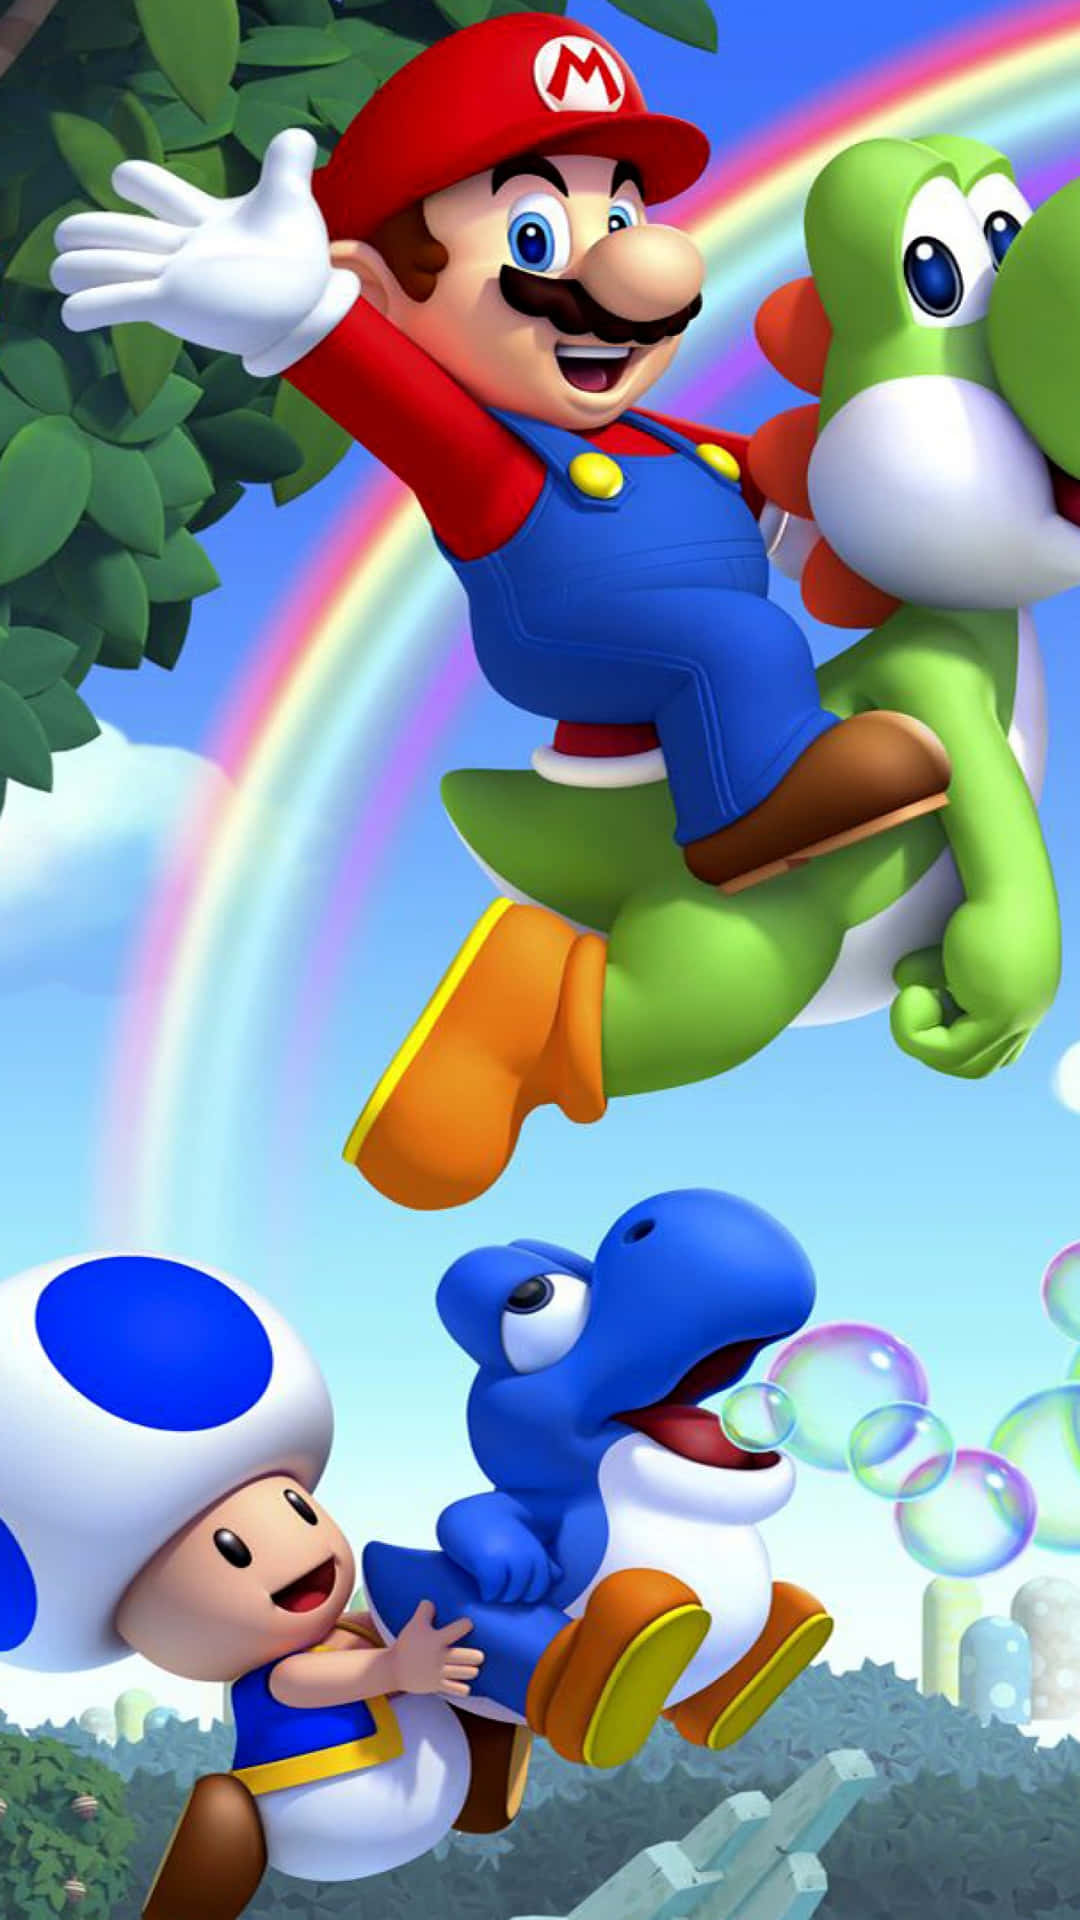 Super Mario Characters Unite Wallpaper